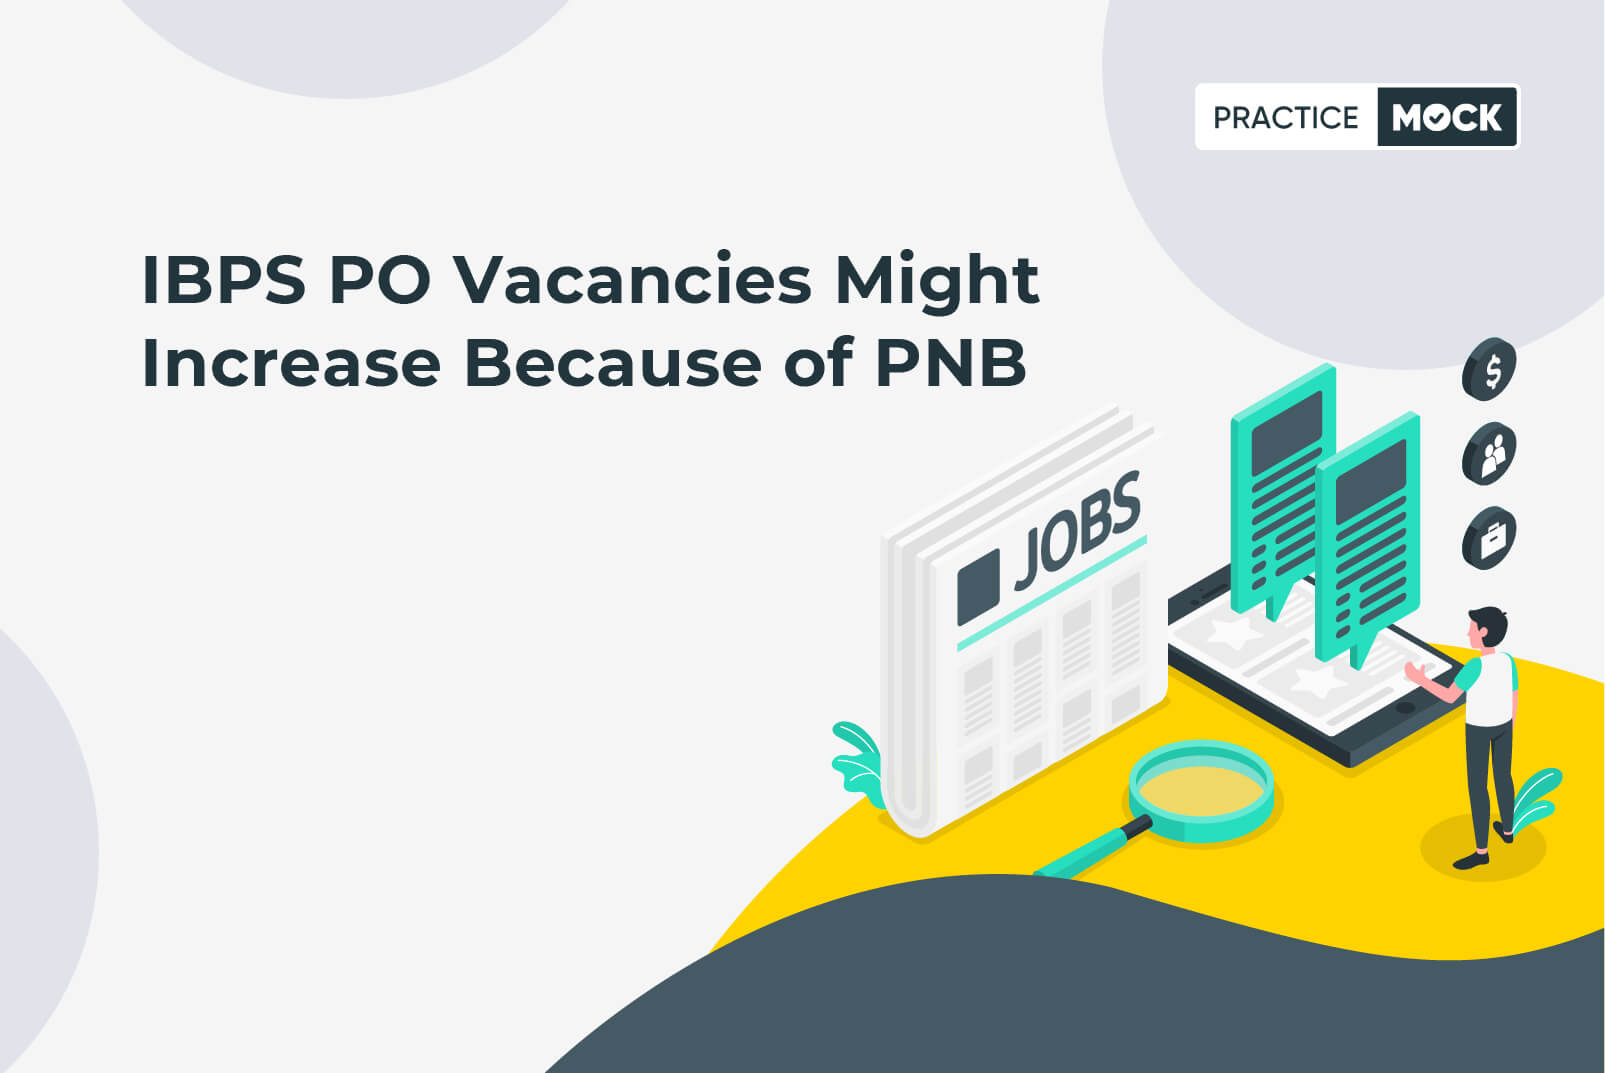 IBPS PO Vacancies might increase because of PNB